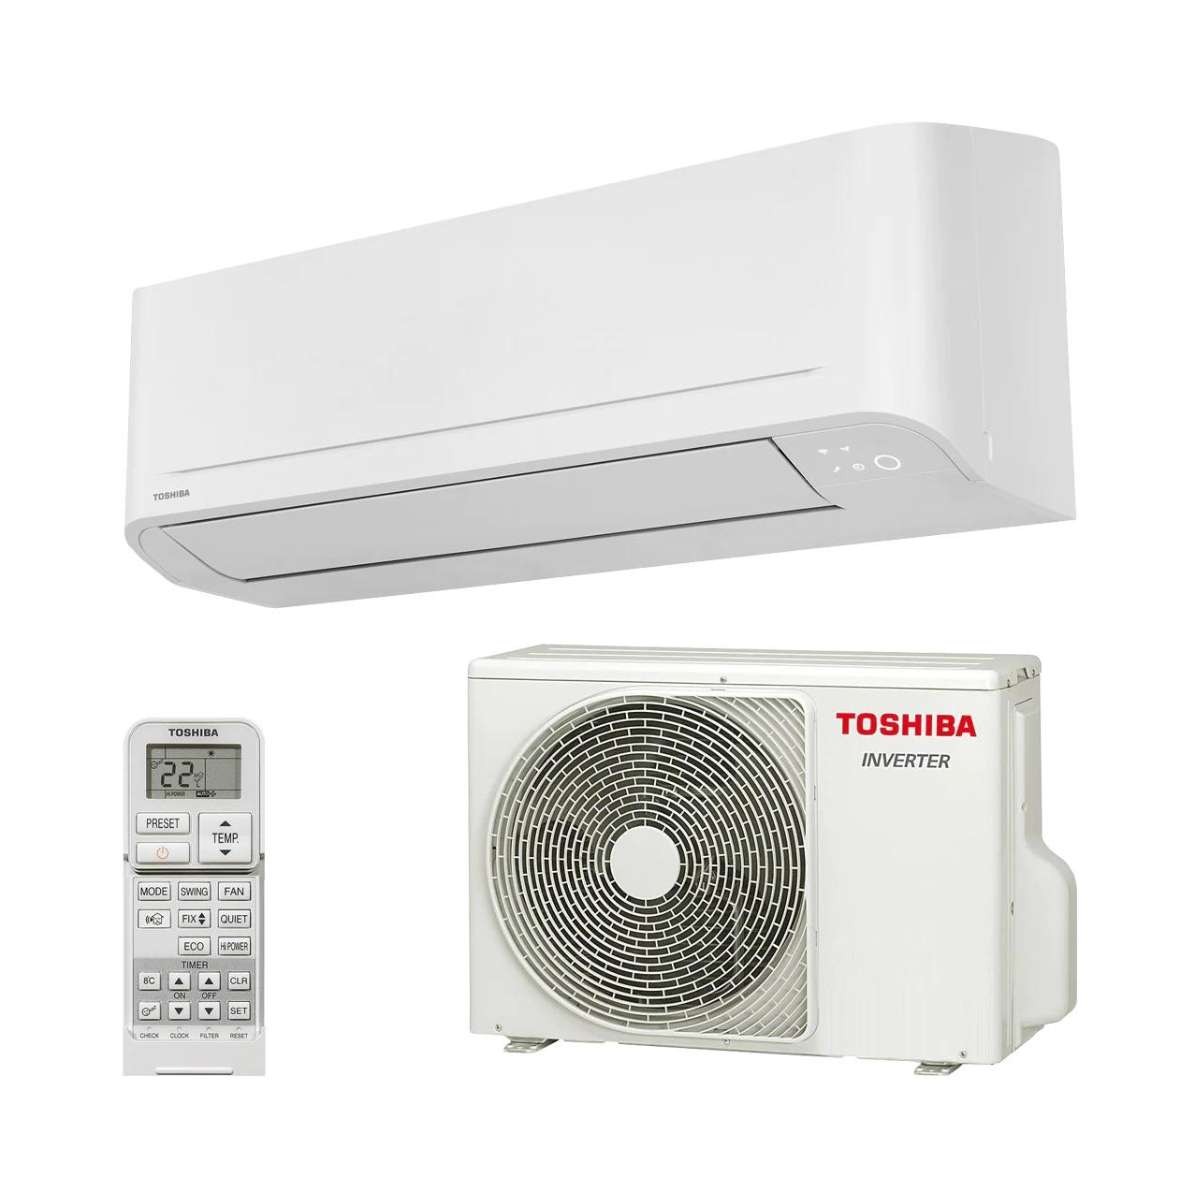 Split klimaanlage Toshiba Seiya+ 16 4,2 kW 14000 BTU mit der Referenz SEIYA+ 16 von der Marke TOSHIBA